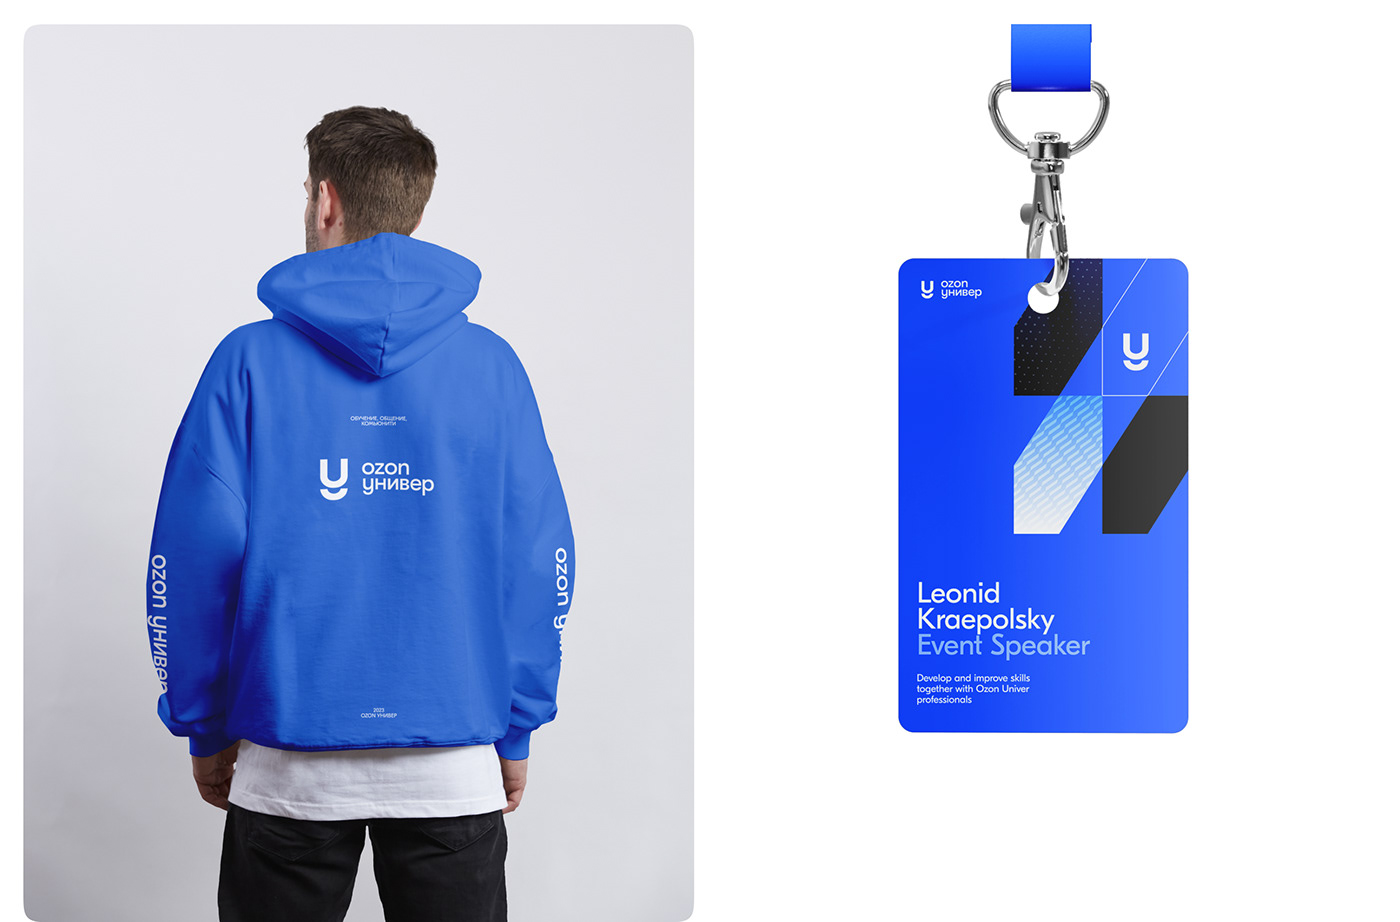 Stylish merchandise, hoodie, badge, logo